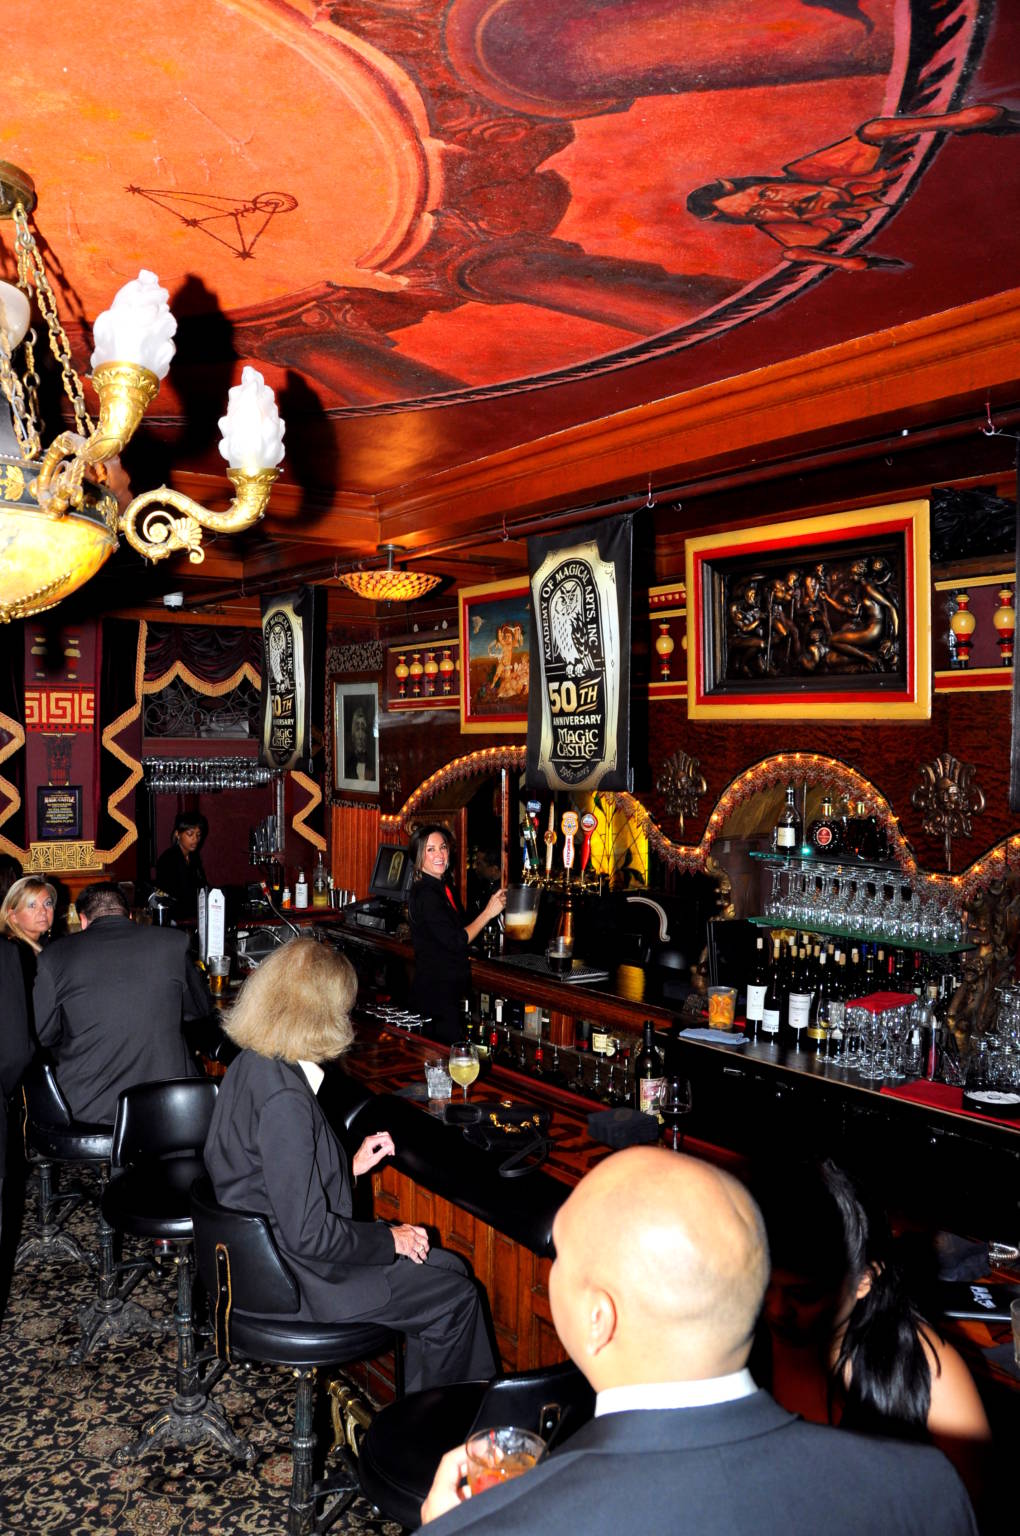 The Grand Salon Bar